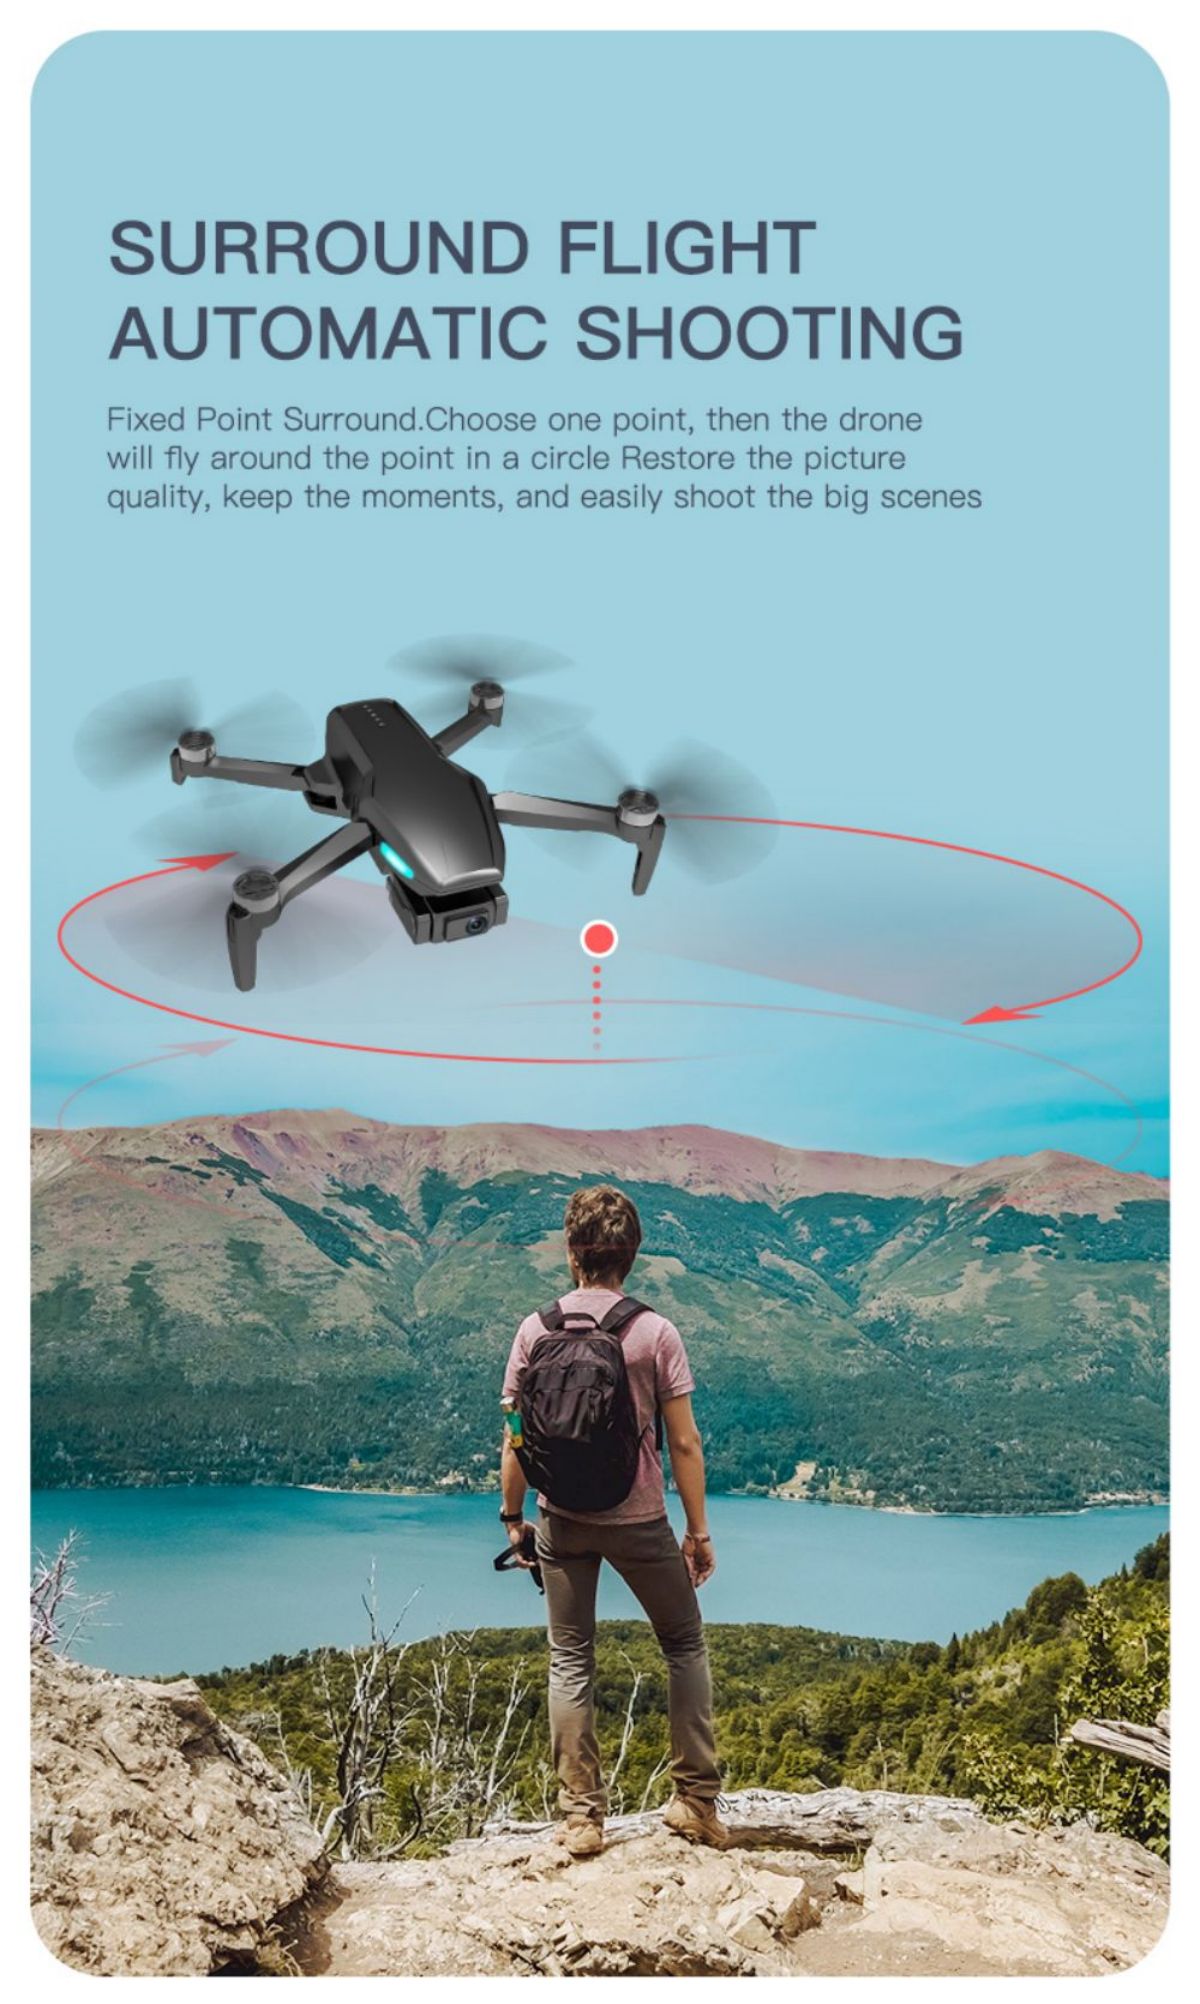 I-Drone Quadcopter (11)